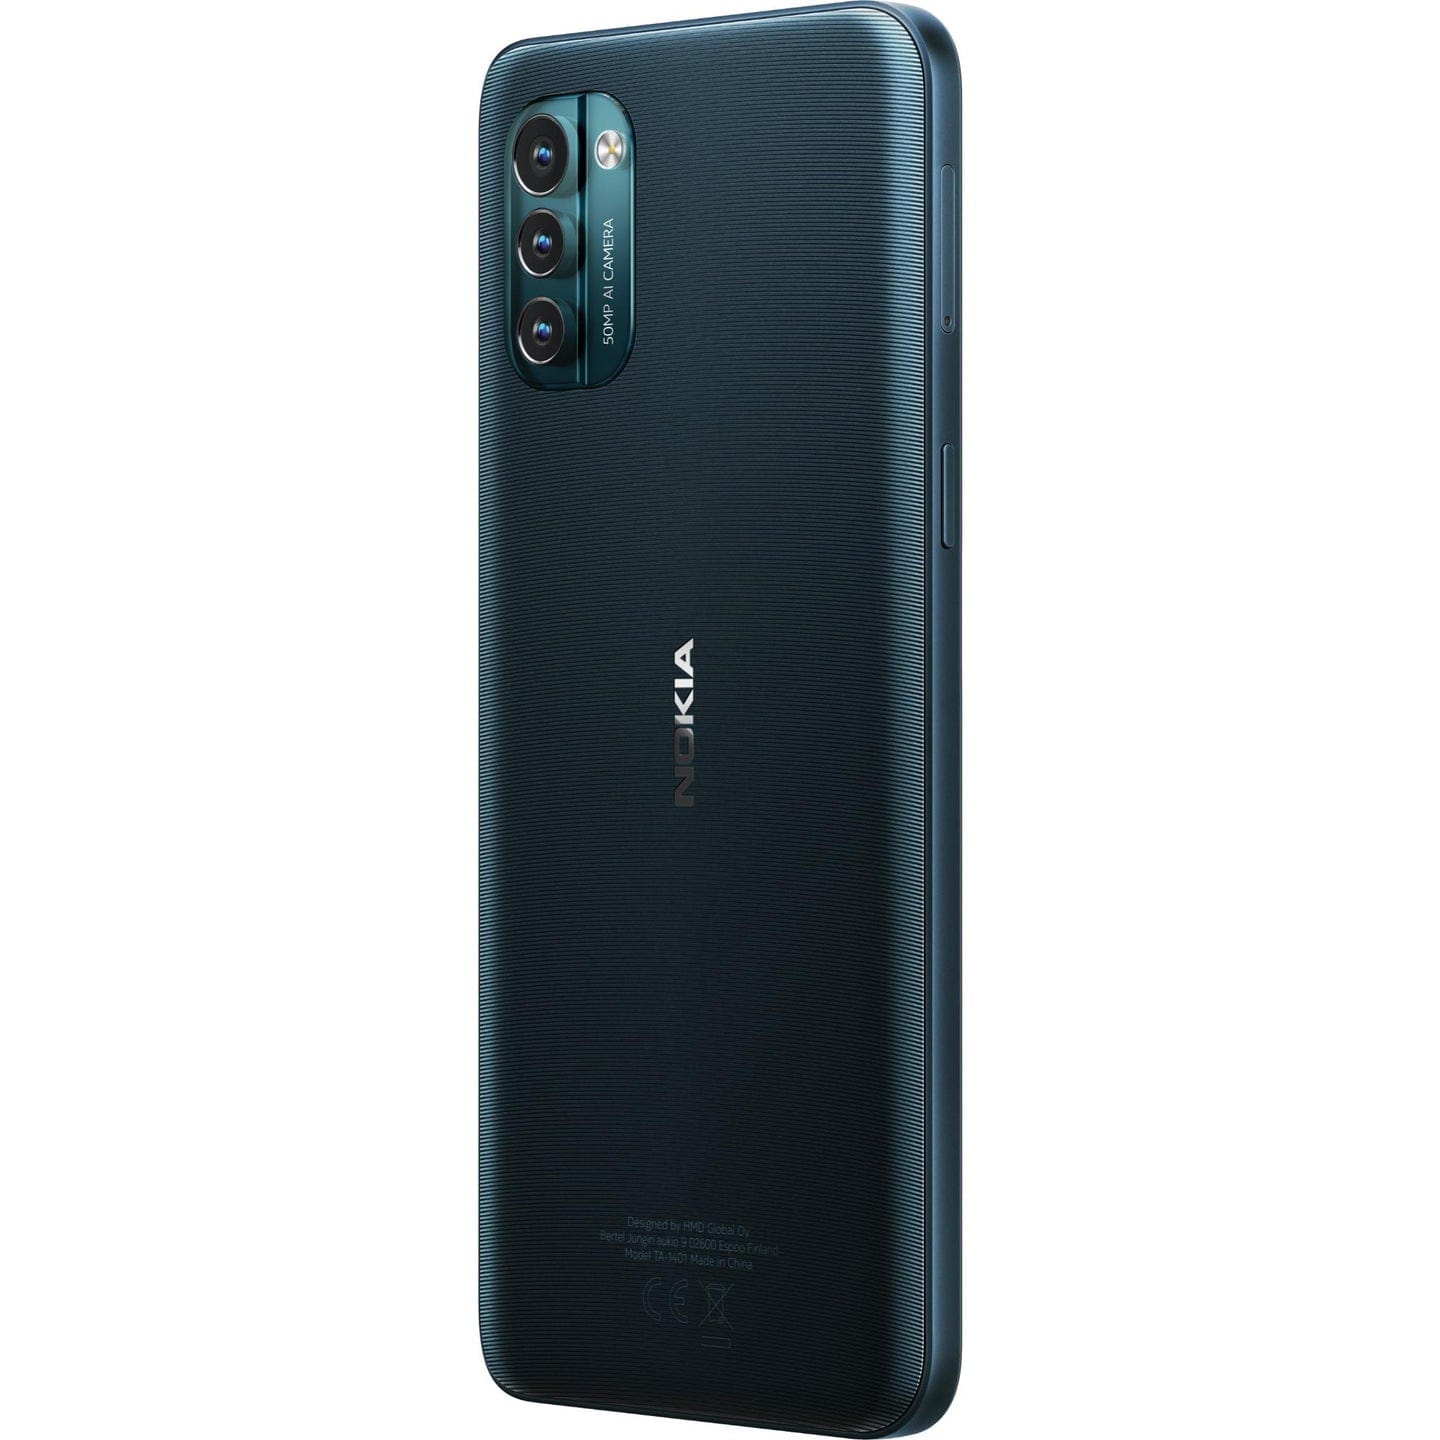 Nokia g21 128gb (Nordic blue)